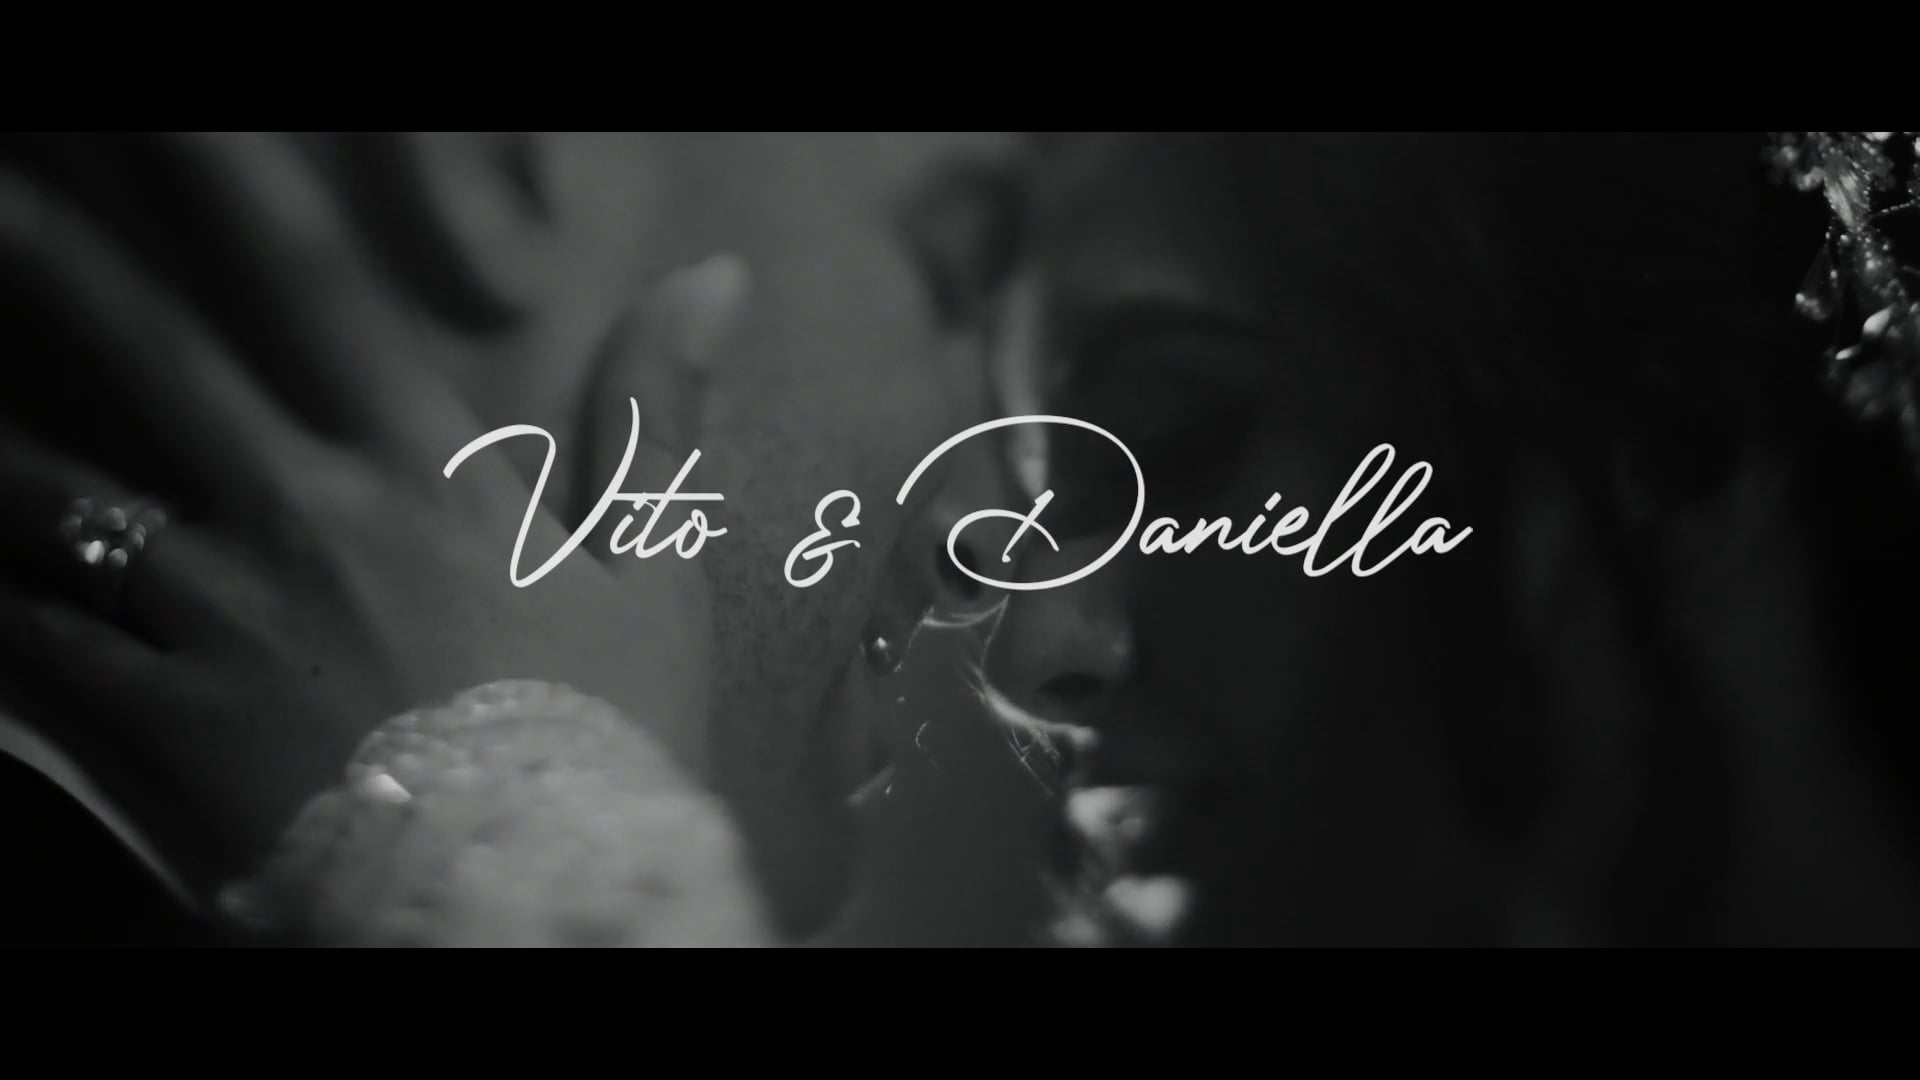 Vito and Daniella